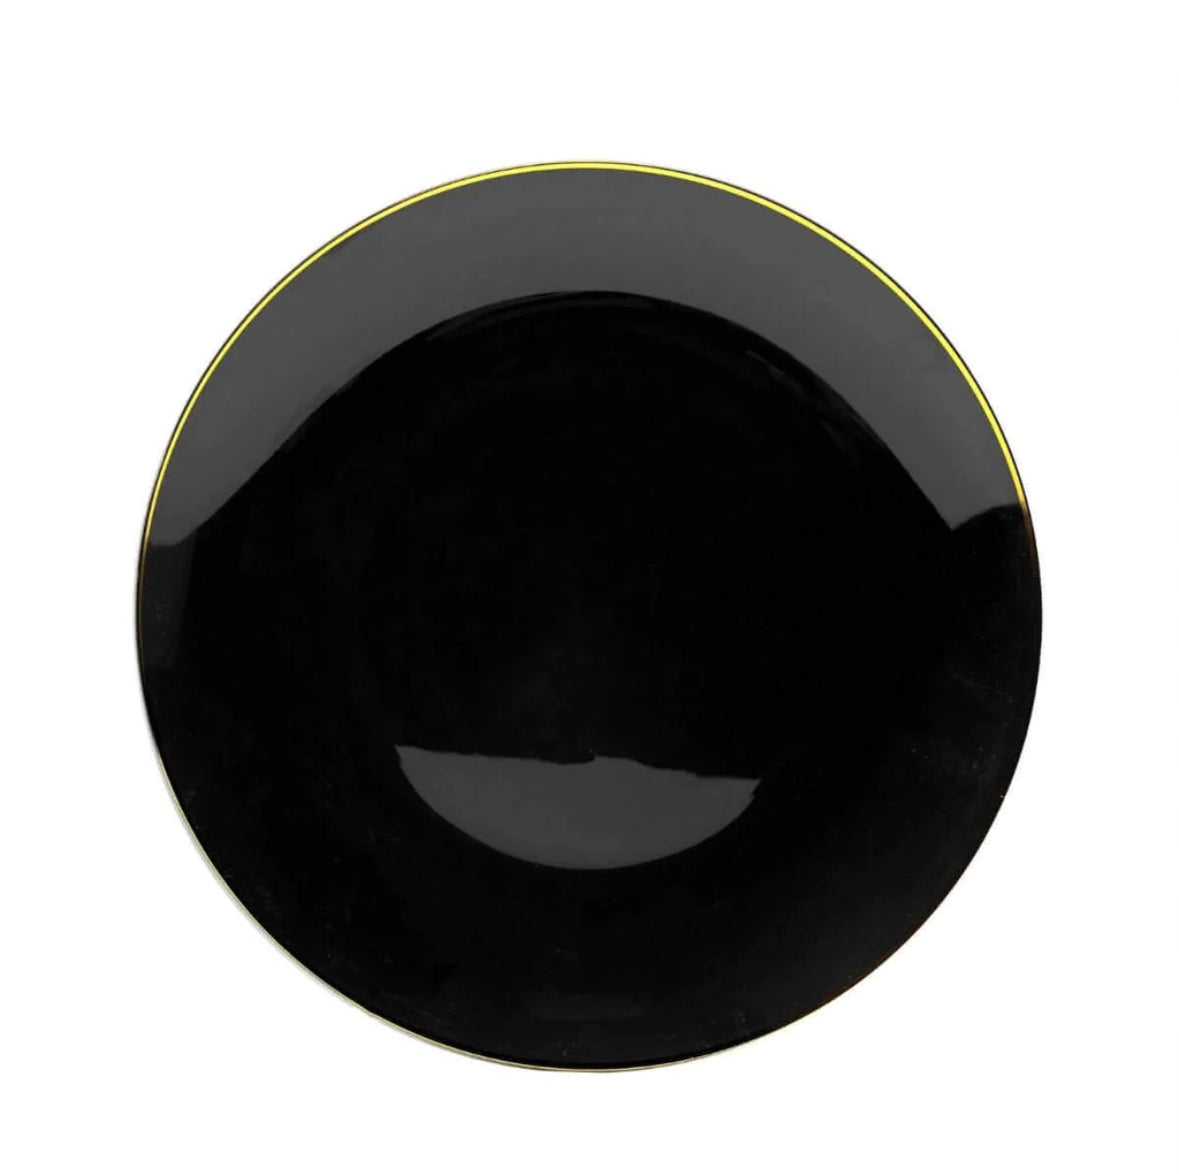 10" Black & Gold Rim Design Plastic Plates 10 Ct